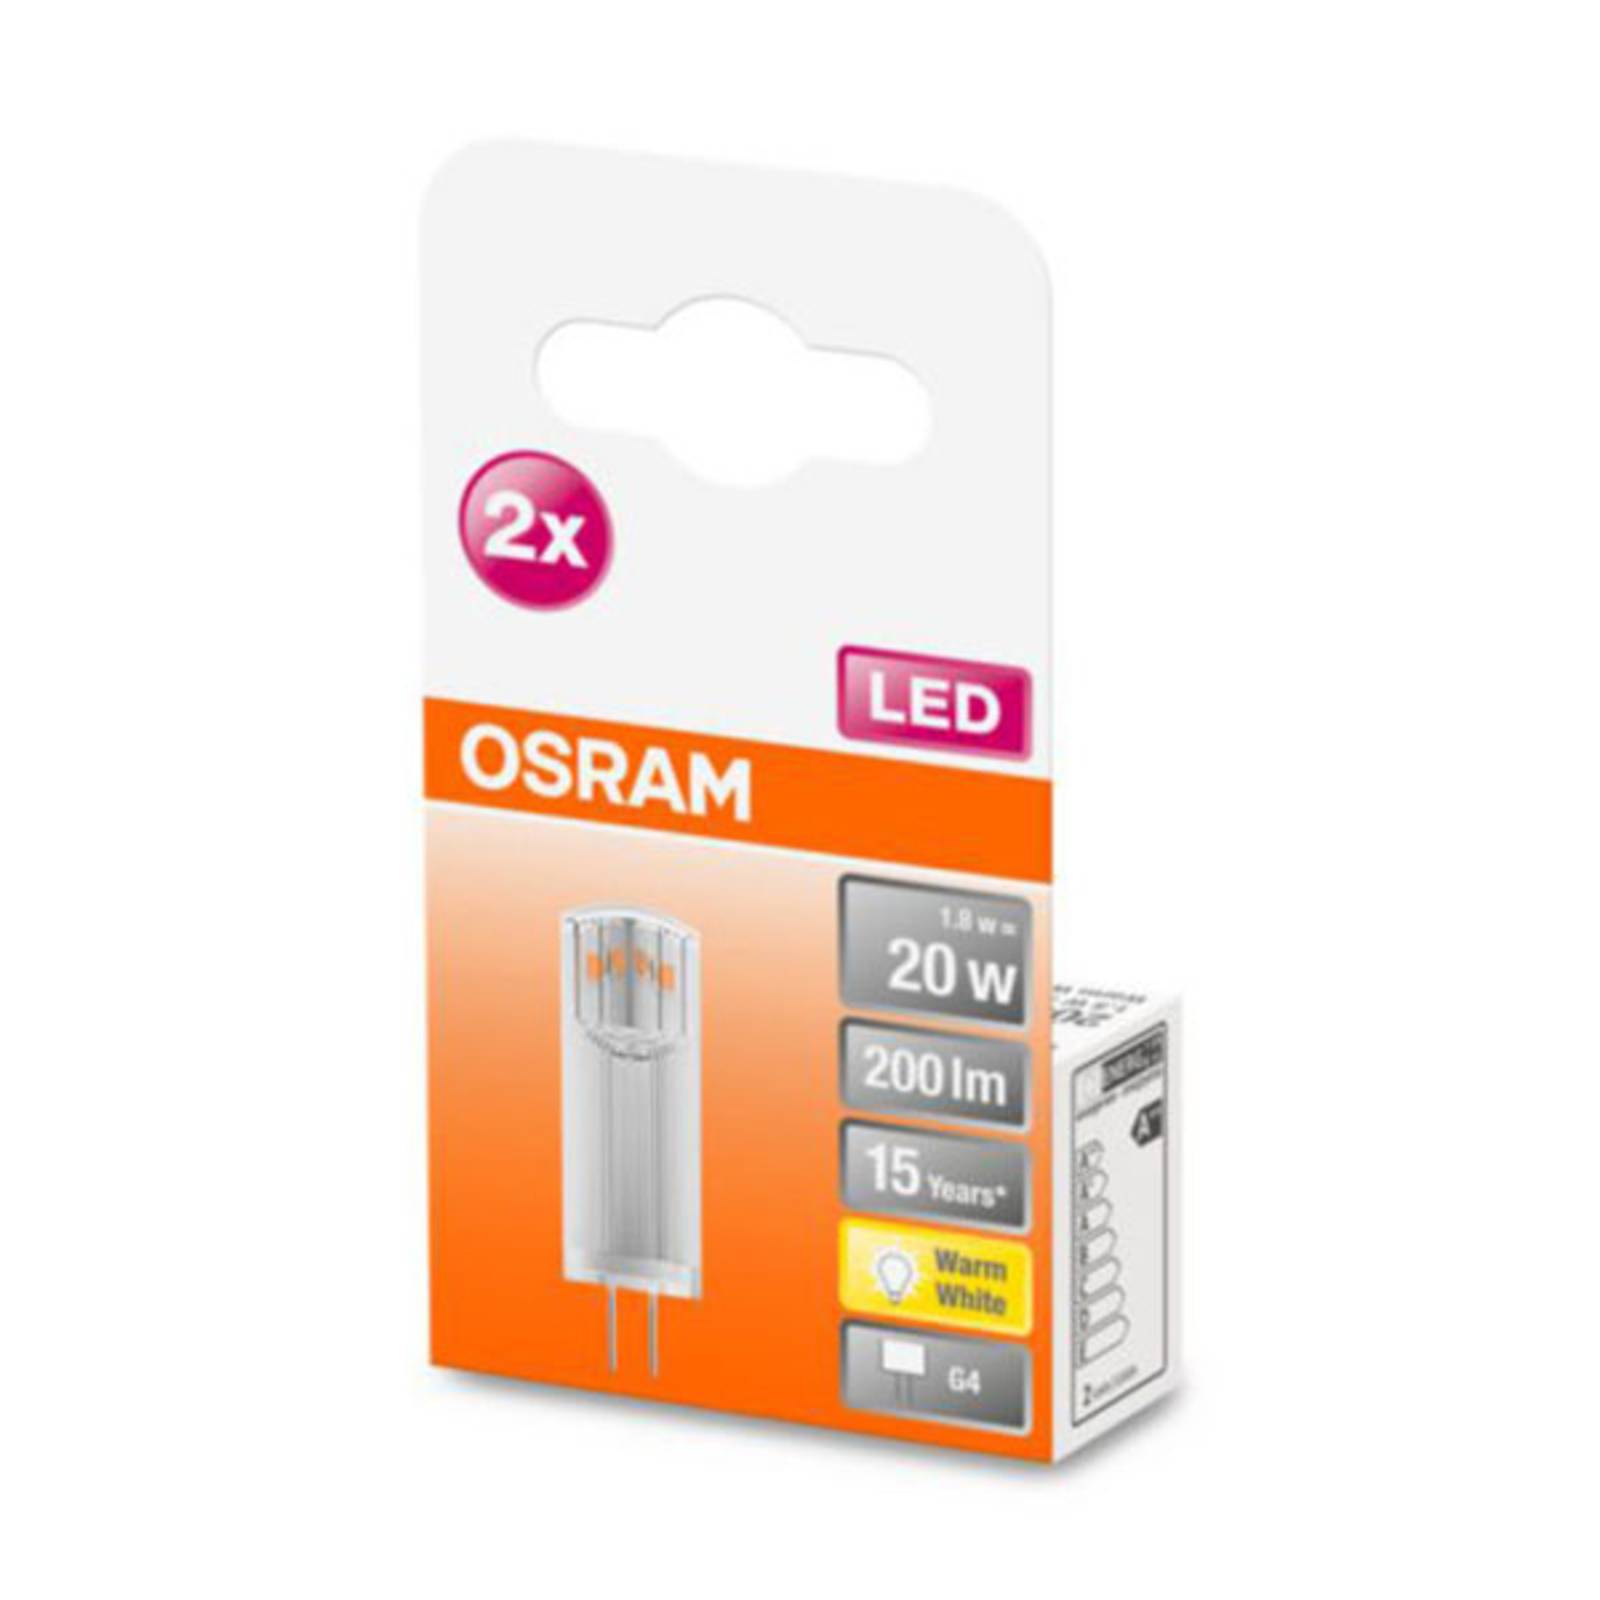 OSRAM LED bispina G4 1,8W 2.700K trasparente 2x